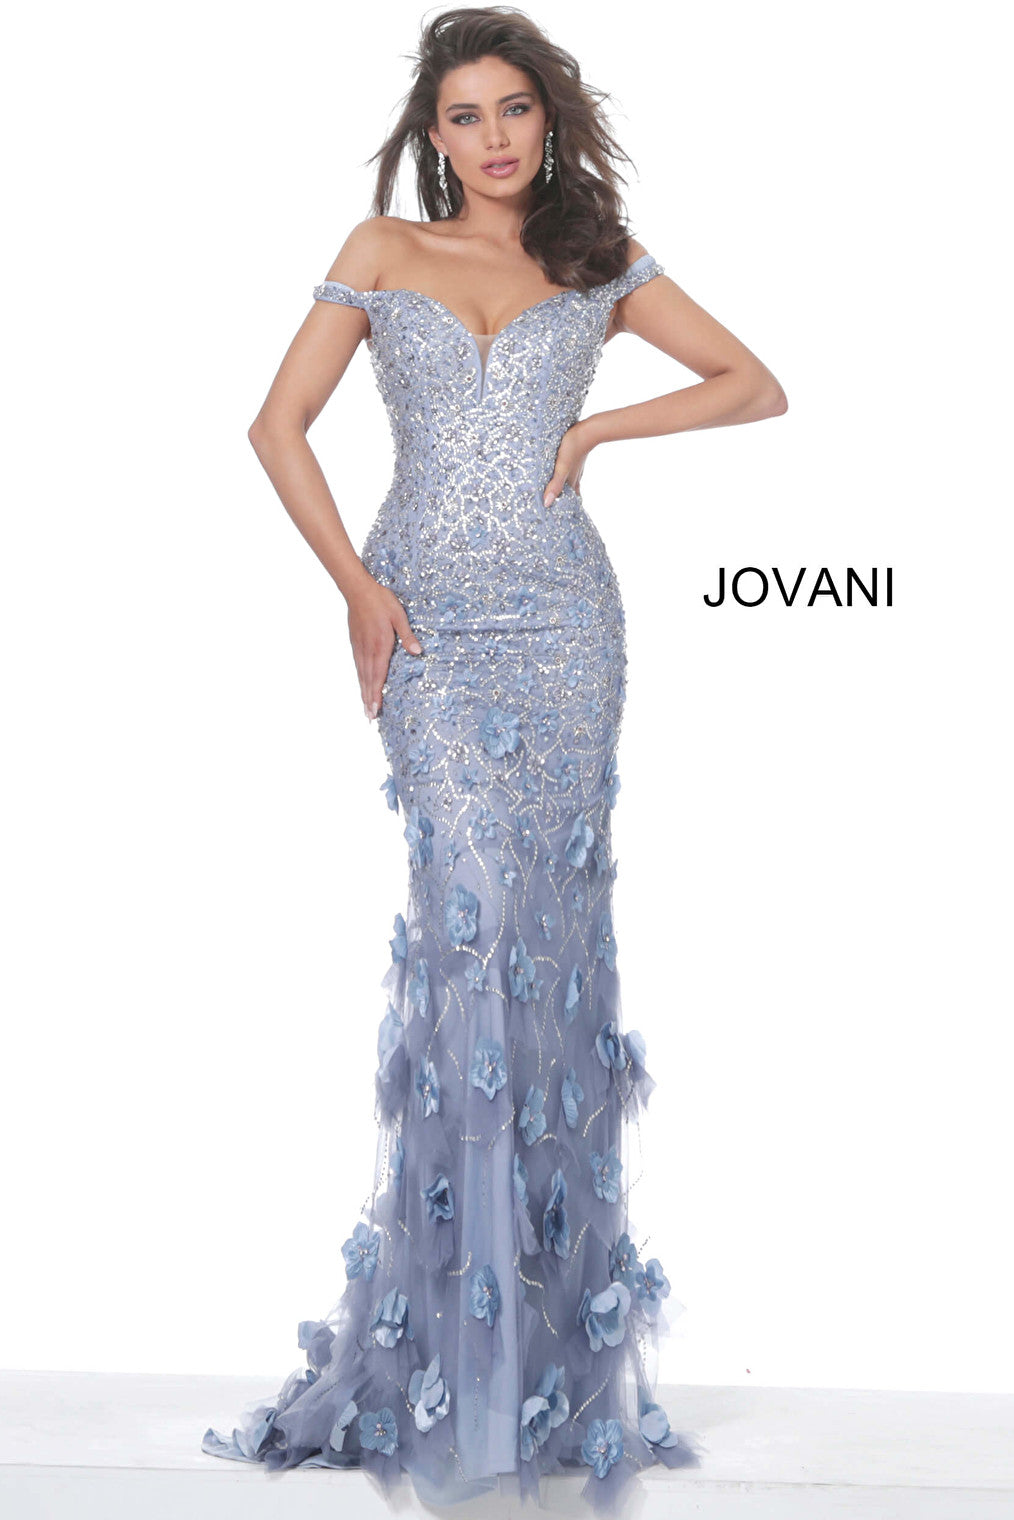 Violet off the shoulder evening dress Jovani 03191